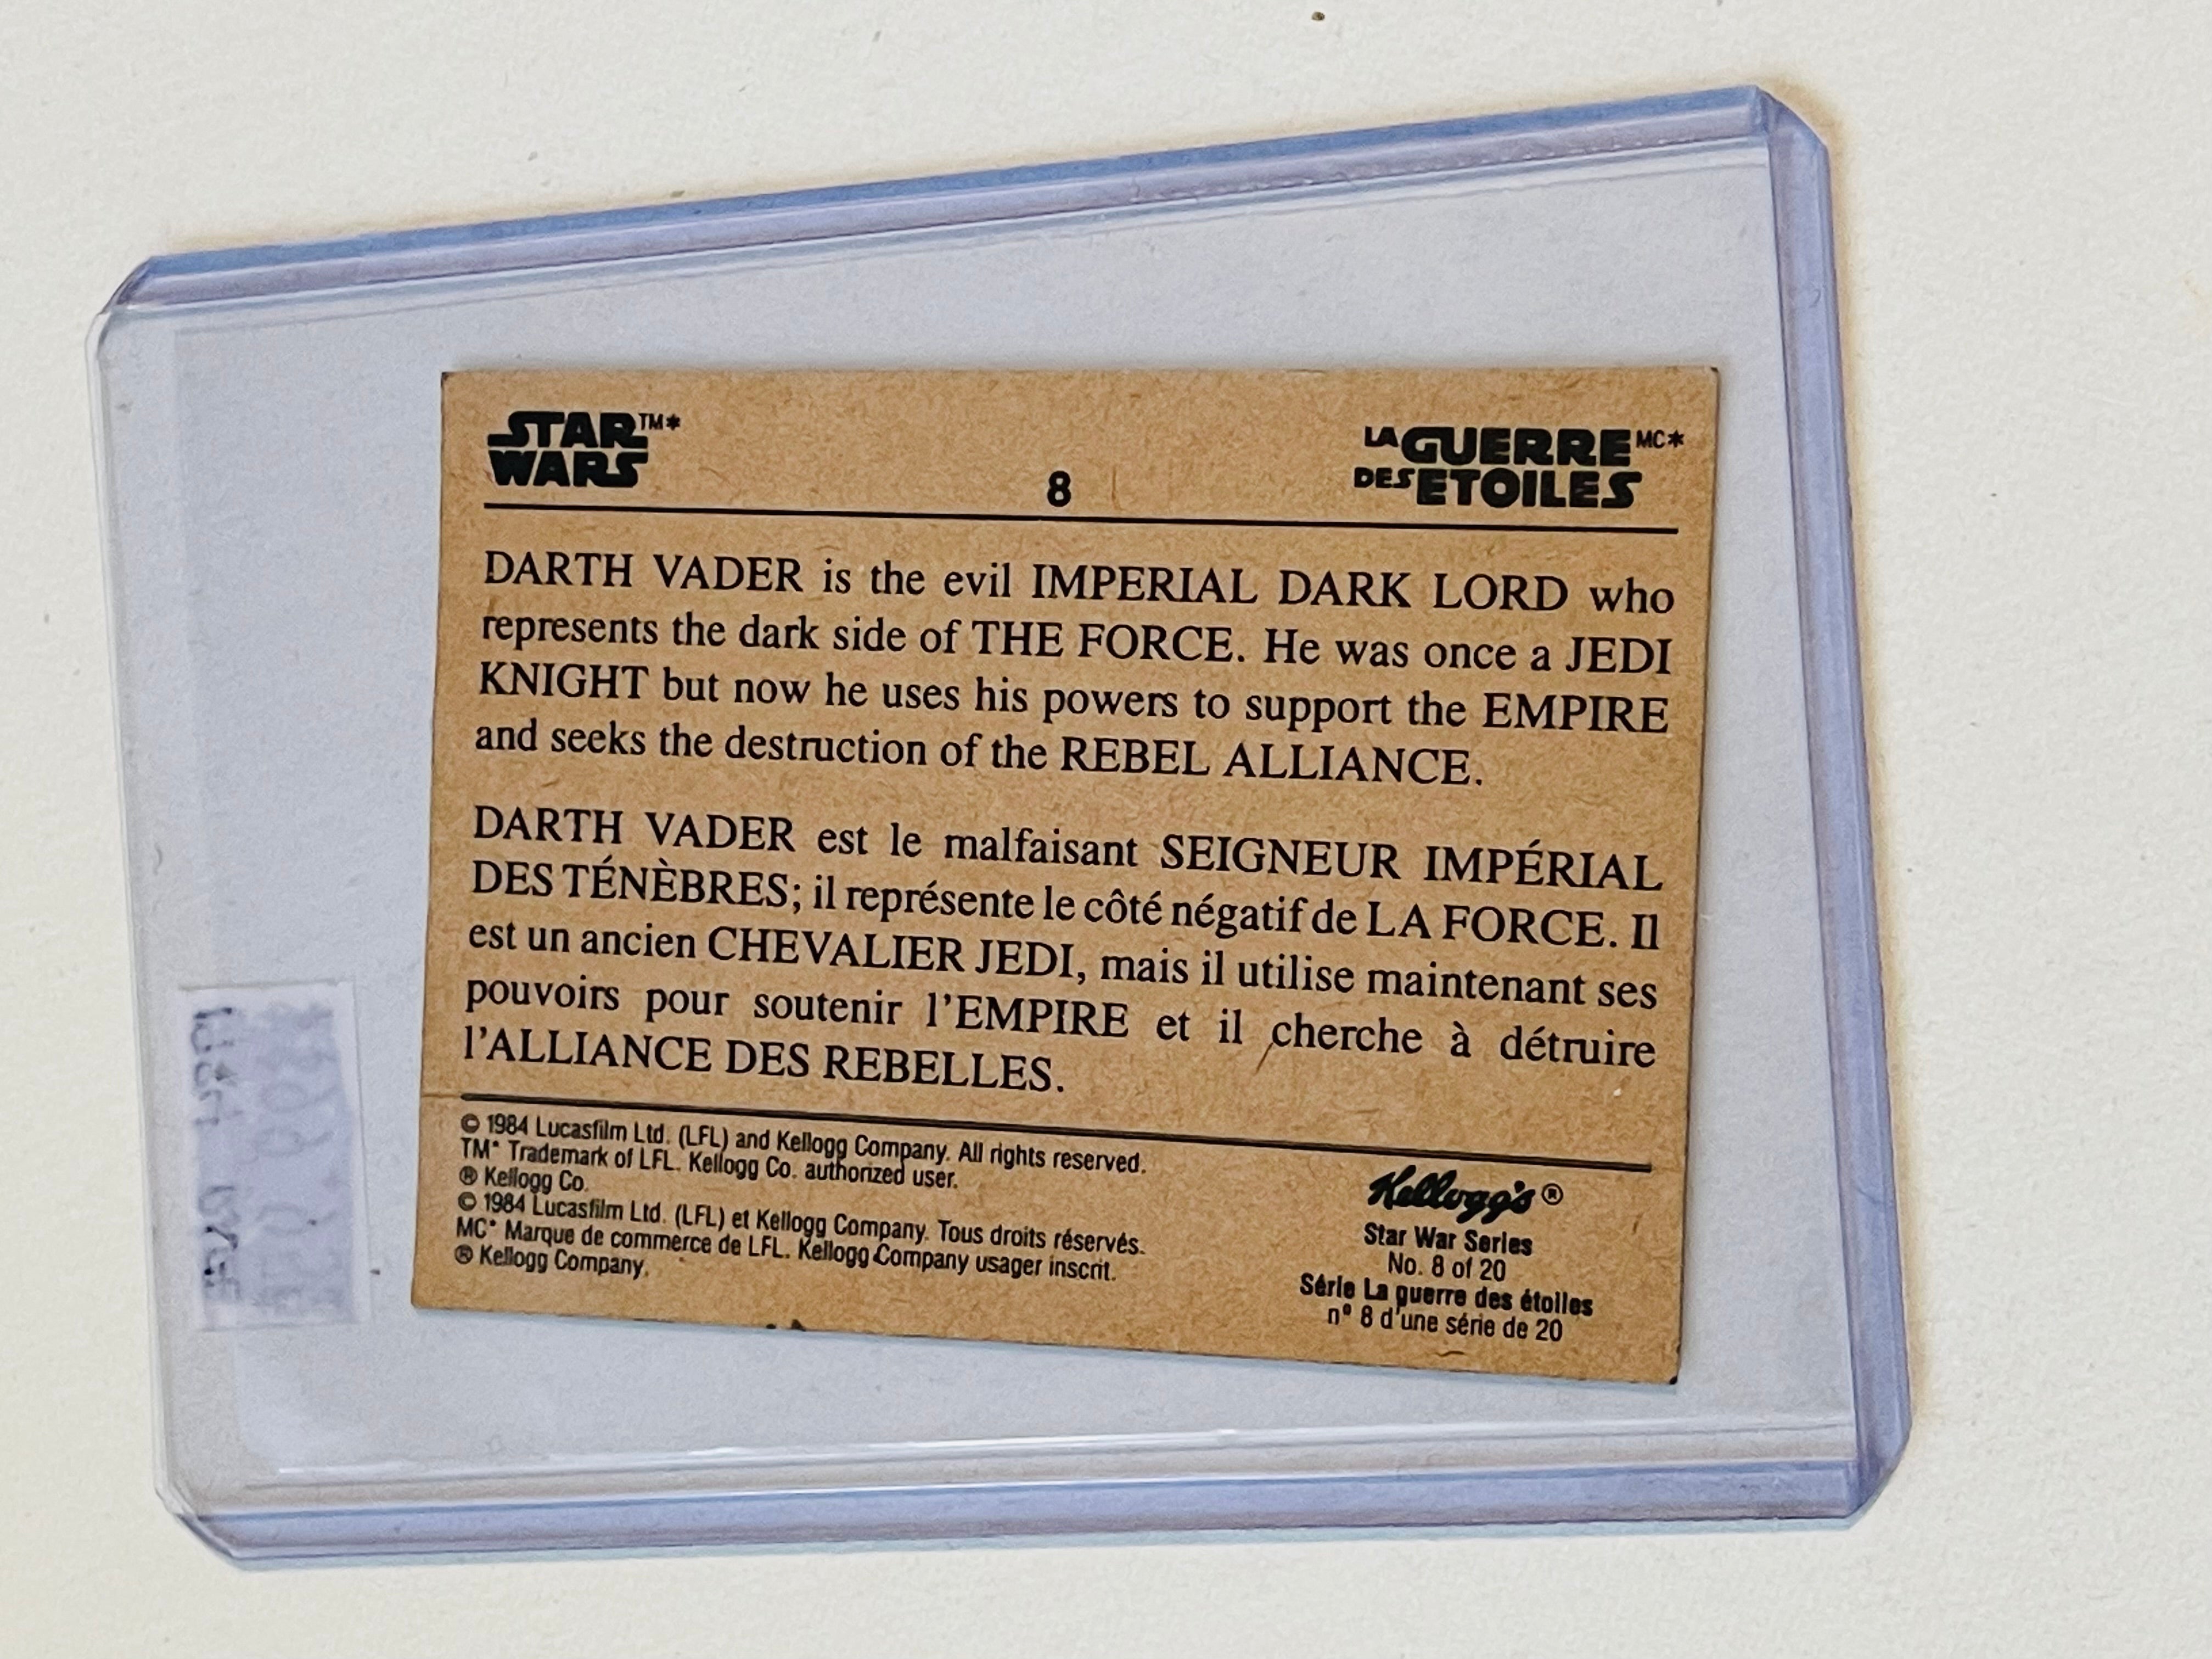 Star Wars Kellogg’s Darth Vader rare French card 1984